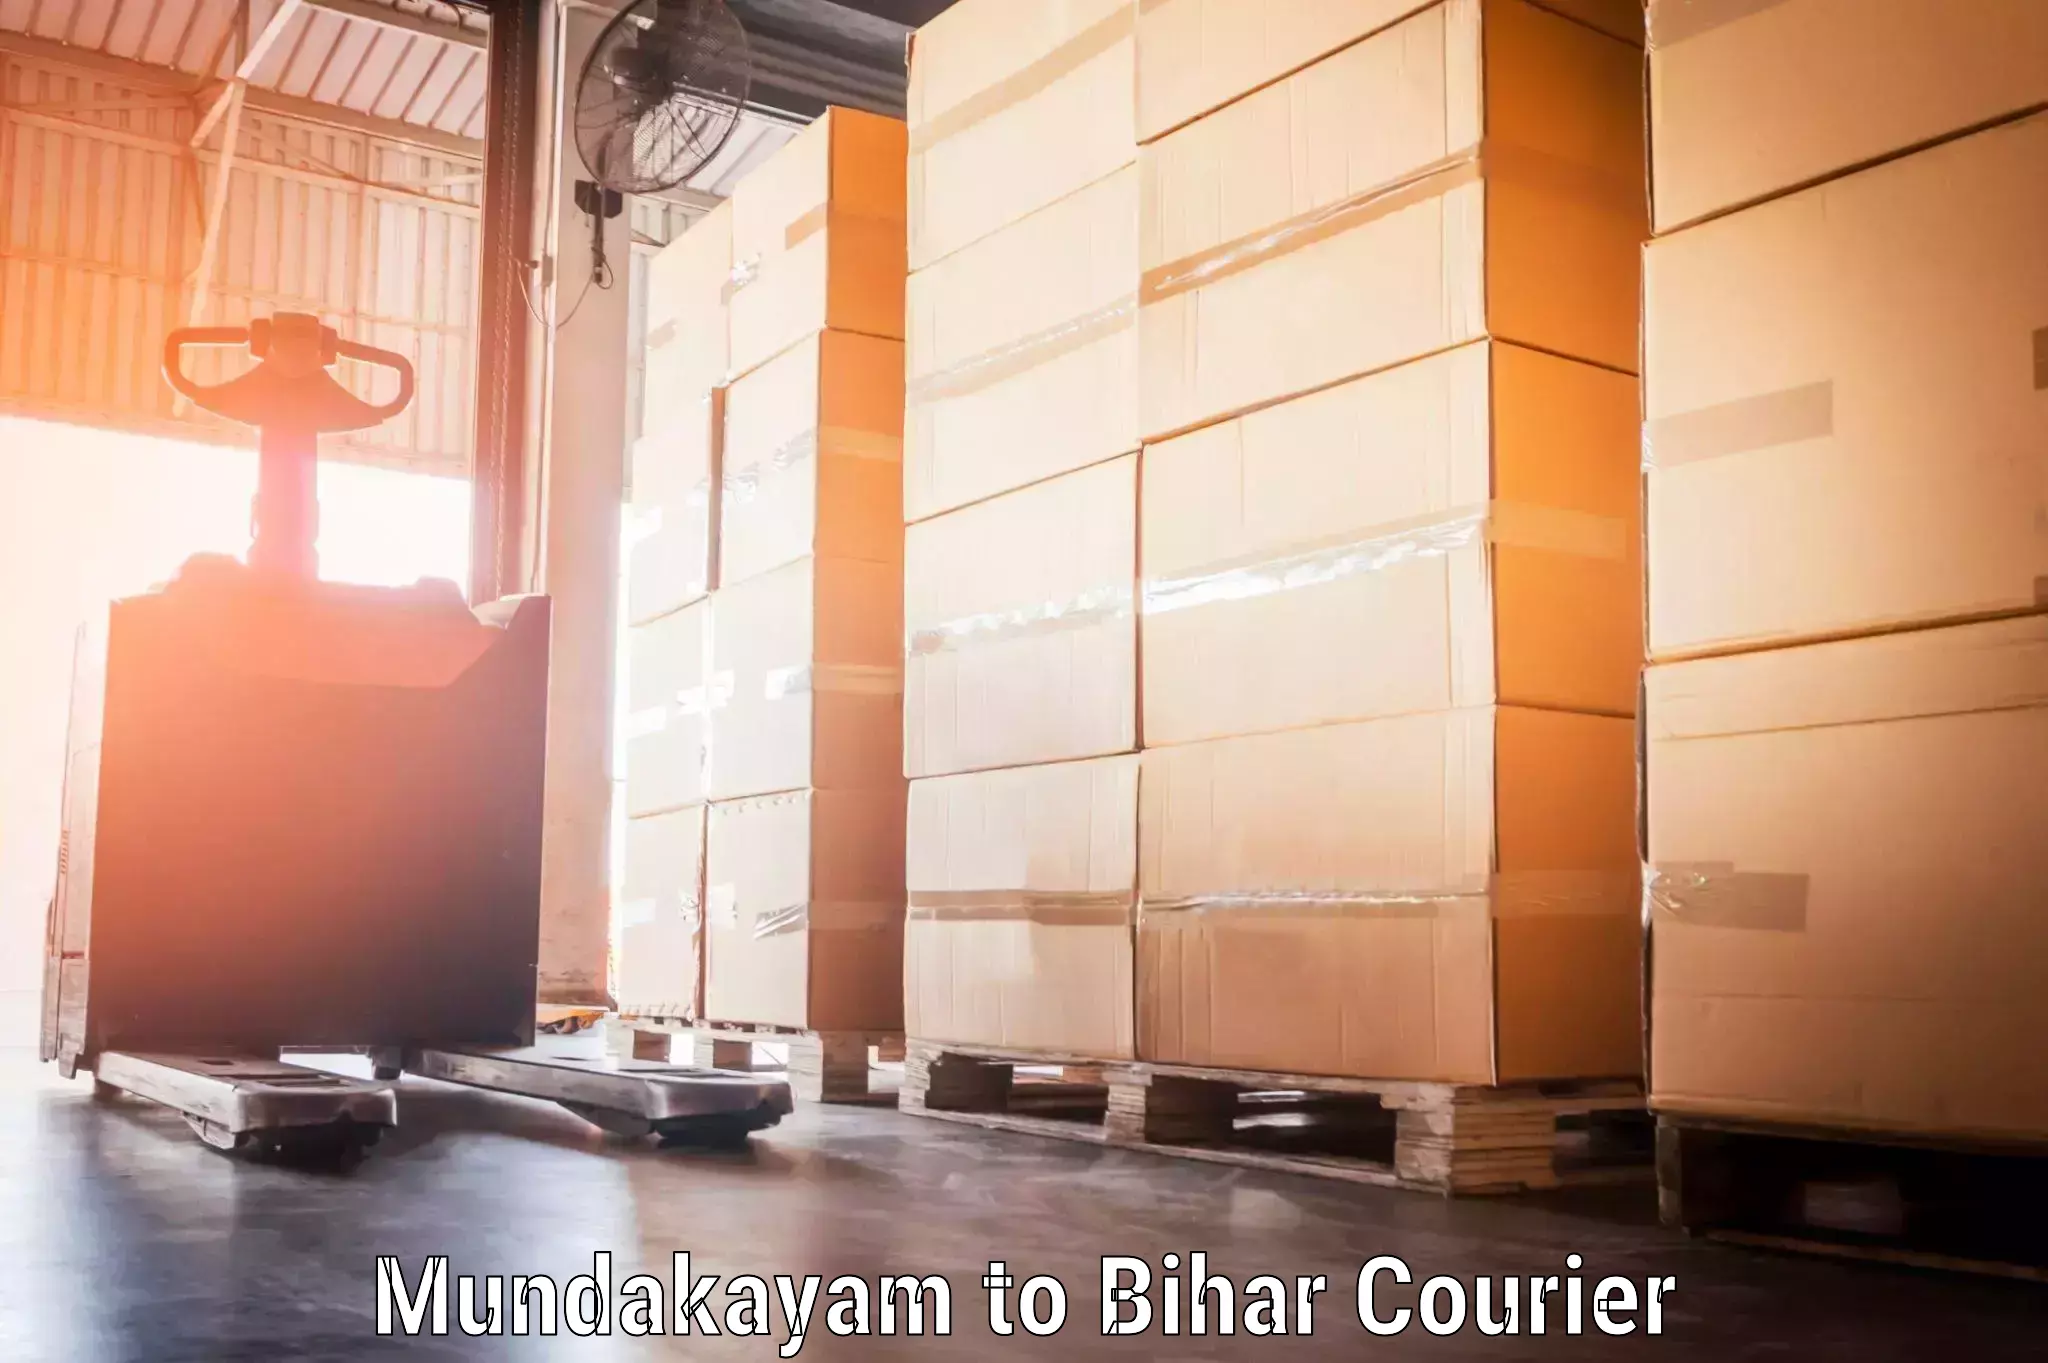 Corporate baggage transport Mundakayam to Bihar